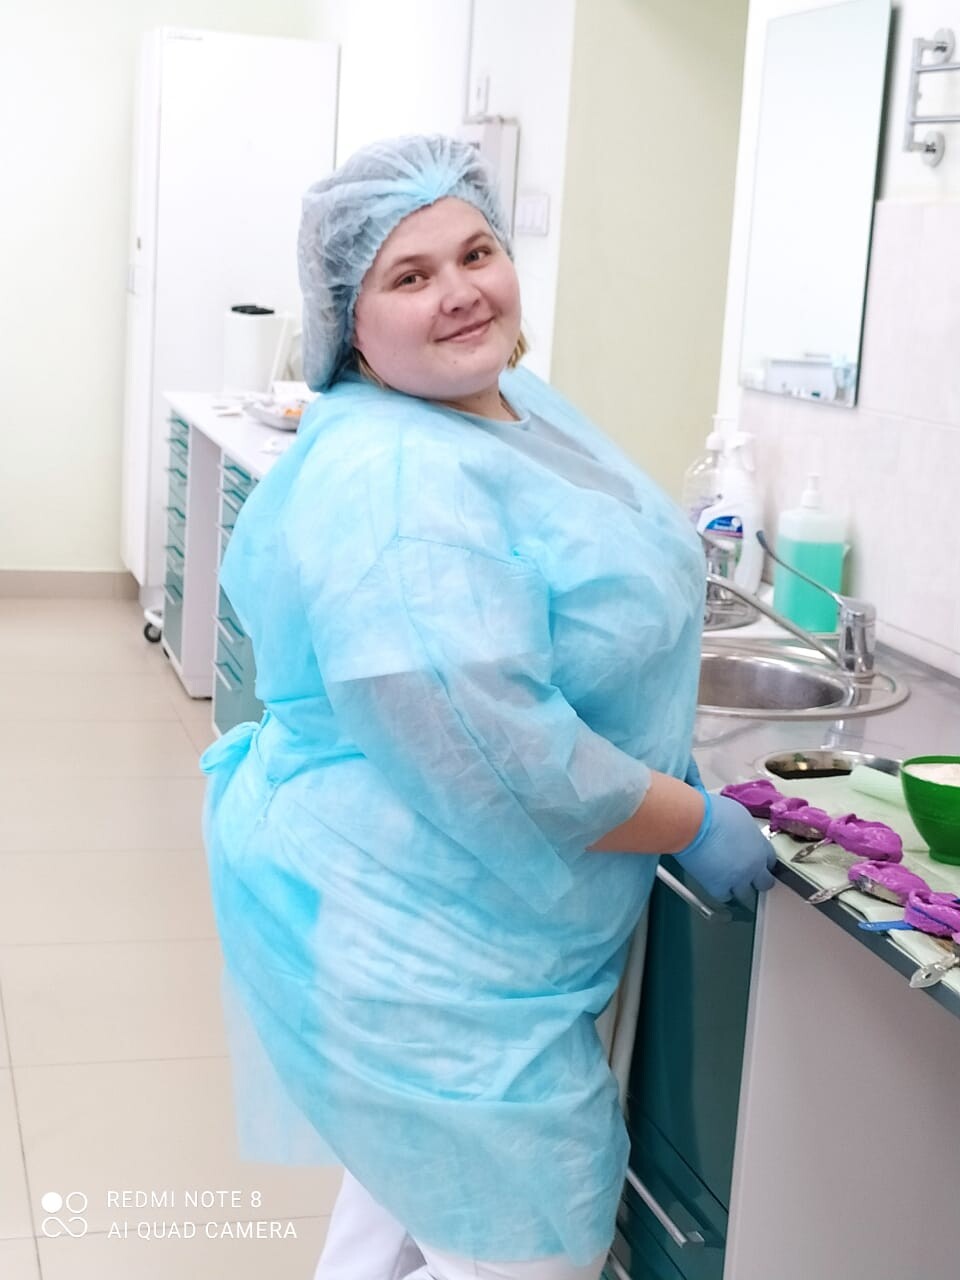 Автор Макашкина Алеся,  медицинская сестра ортопедического  отделения   ГАУЗ «СП № 62 ДЗМ